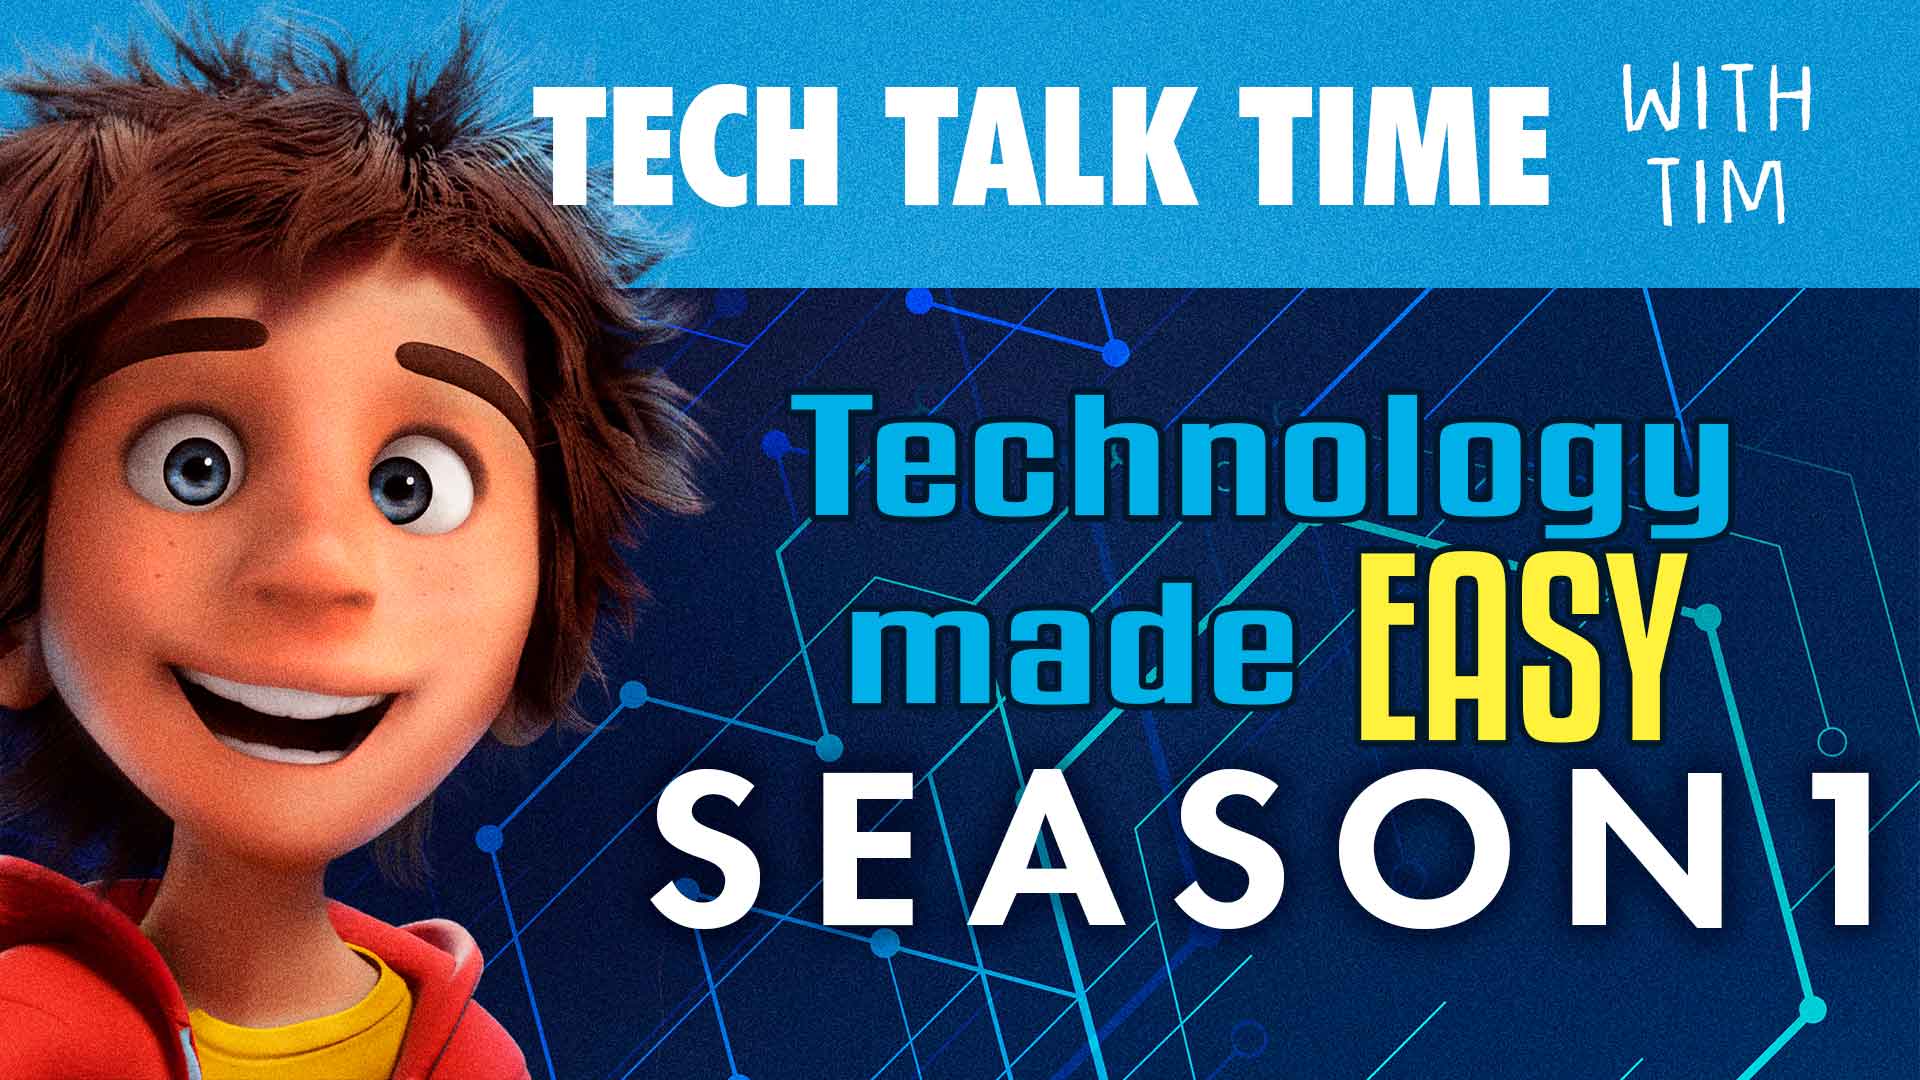 Tech Talk Time Season 1